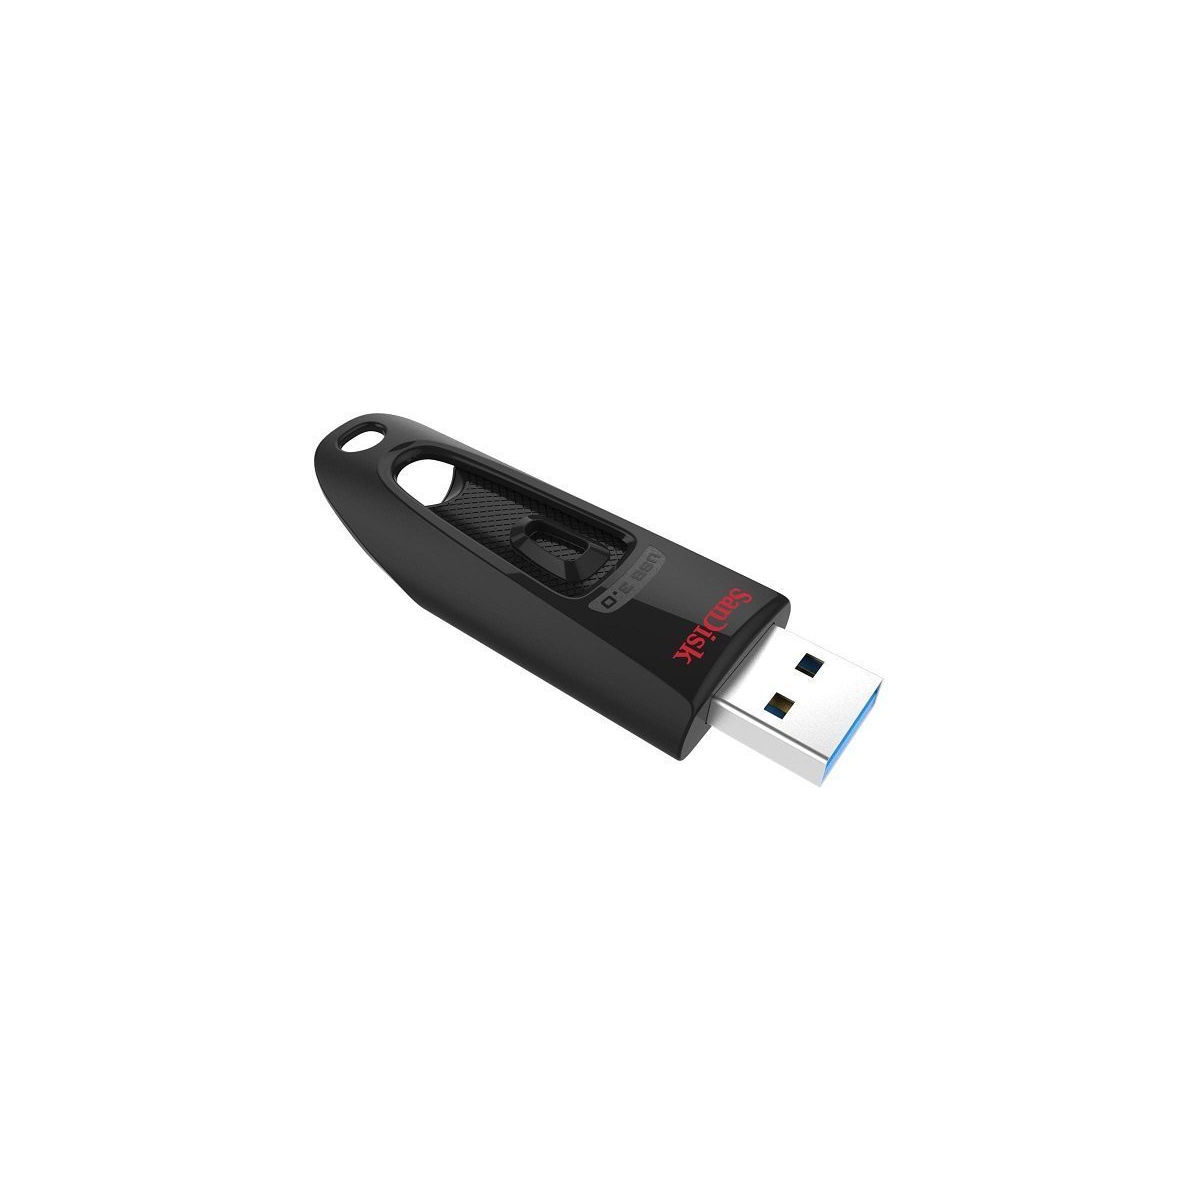 USB-Stick SanDisk Ultra 32GB USB 3.0